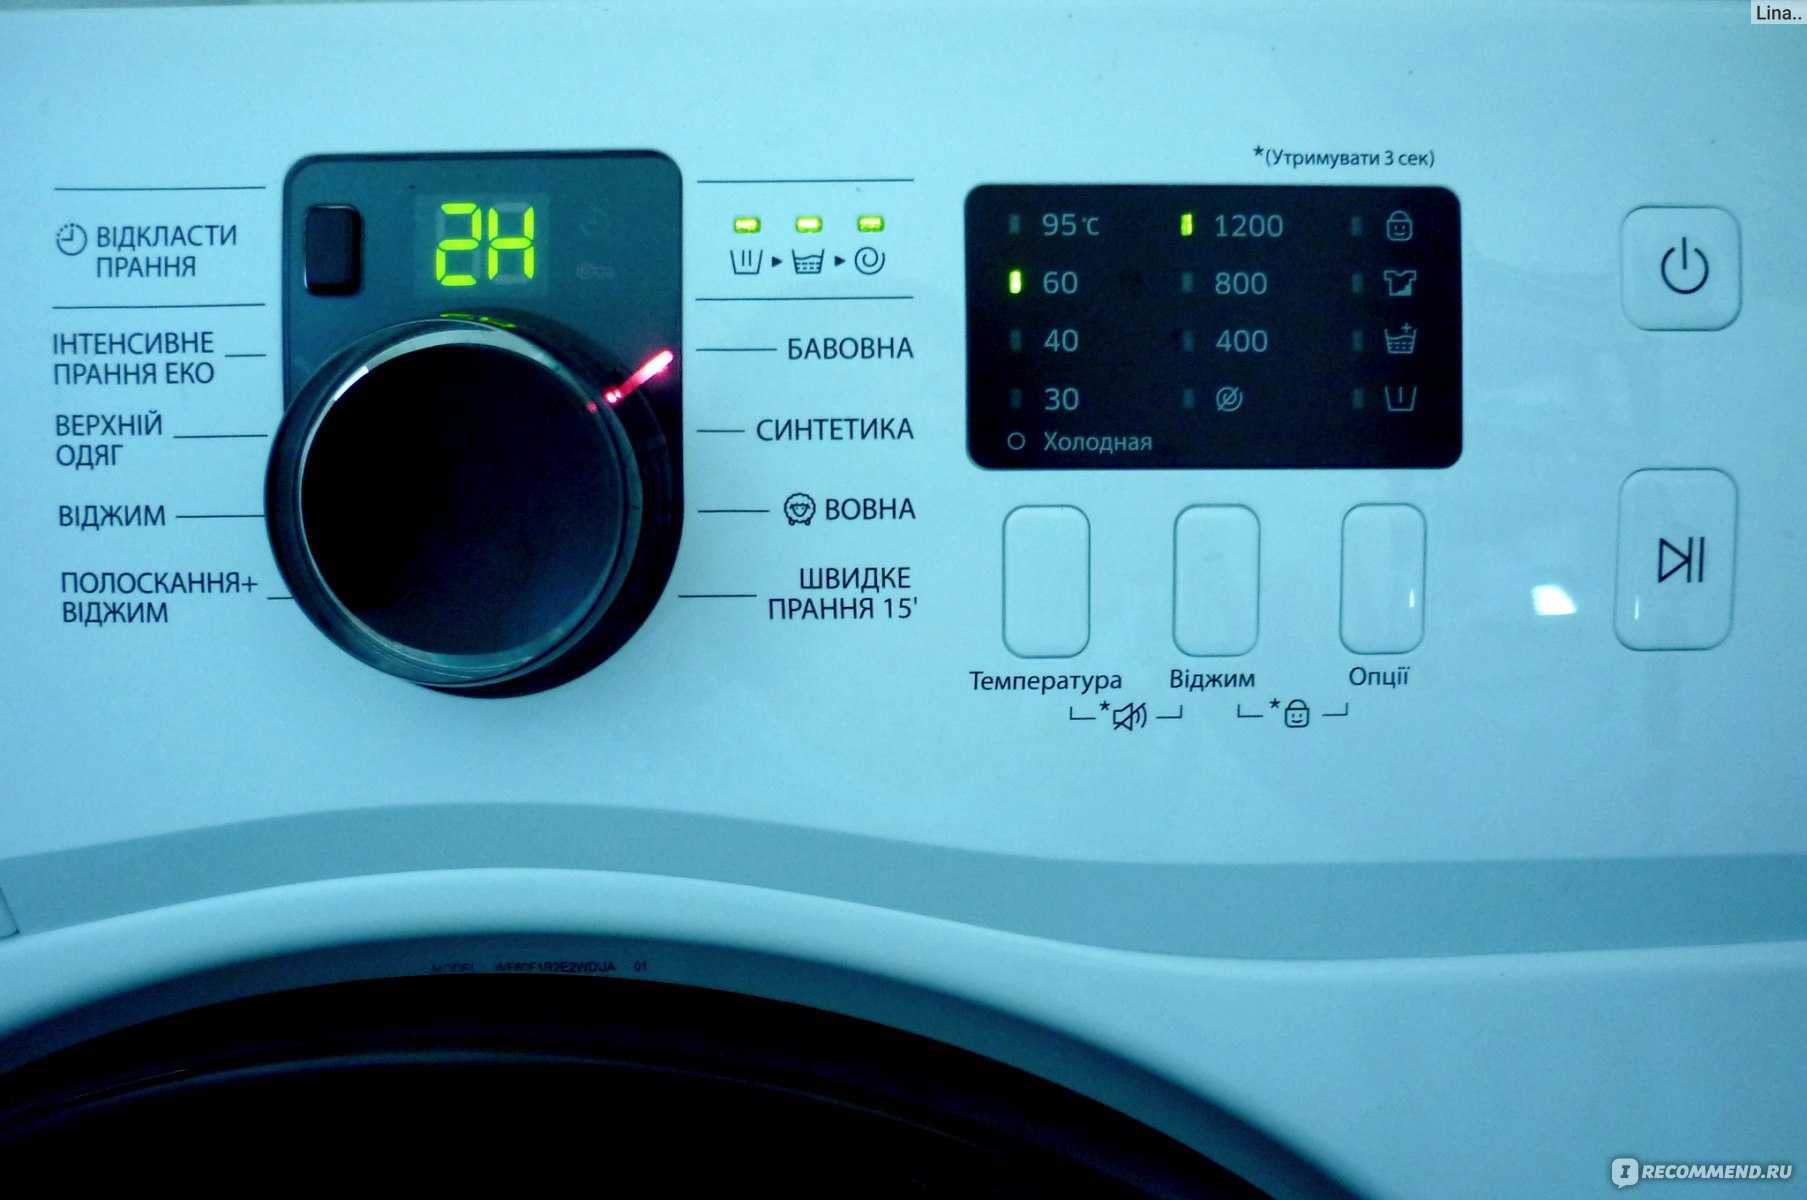 Включаем стиральную машину «самсунг» и правильно ею пользуемся